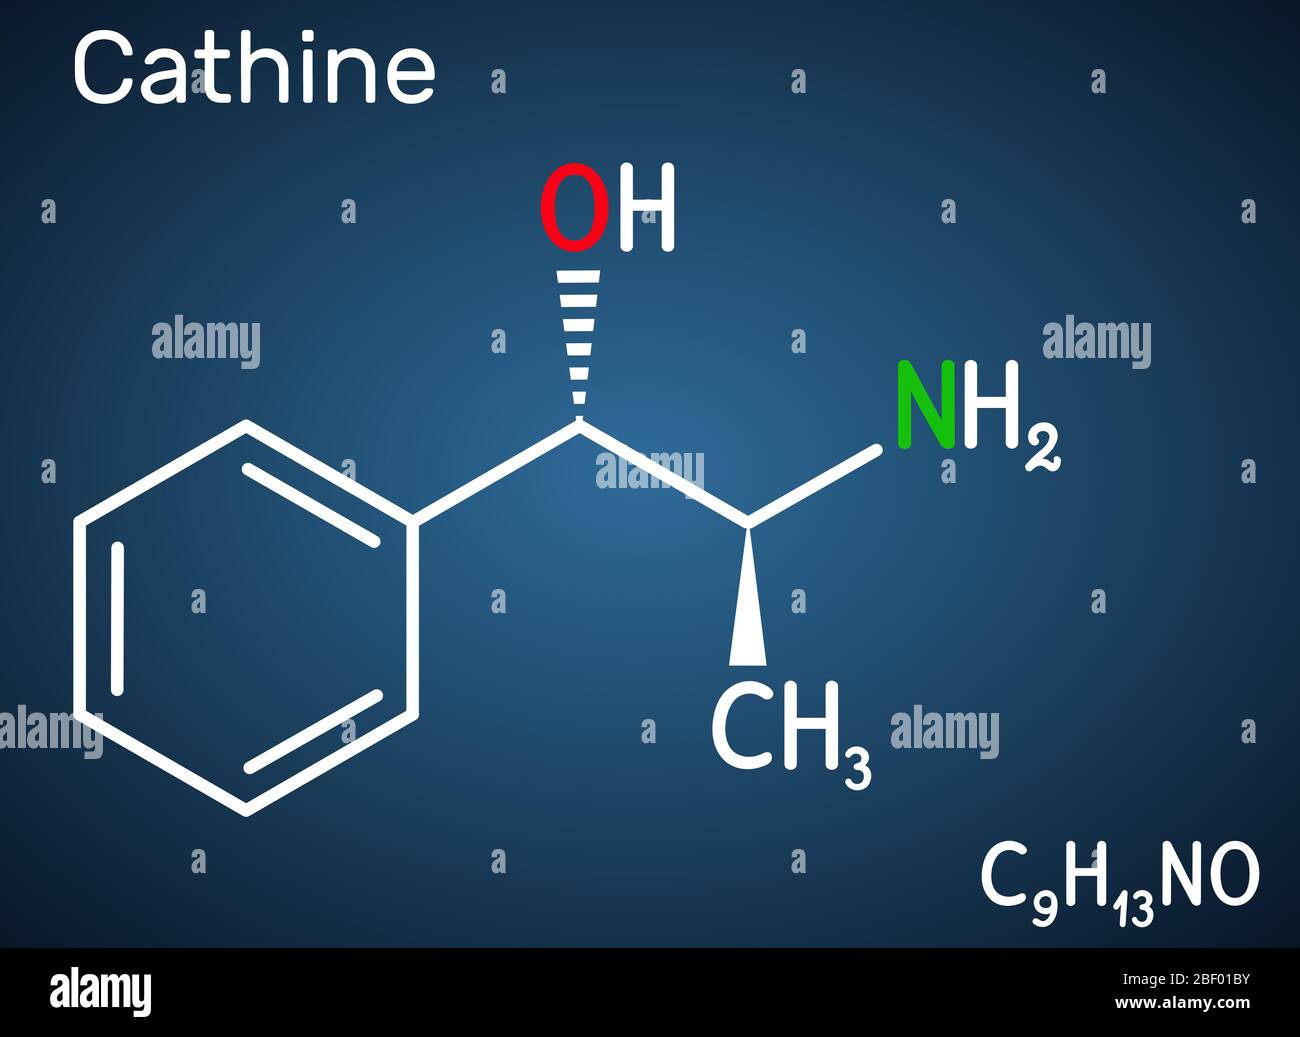 Cathin, Norpseudoephedrin, C9H13NO-Molekül. Es ist ein alkaloides,  psychoaktives Medikament mit stimulierenden Eigenschaften. Es ist natürlich  in Catha edulis, kh gefunden Stock-Vektorgrafik - Alamy